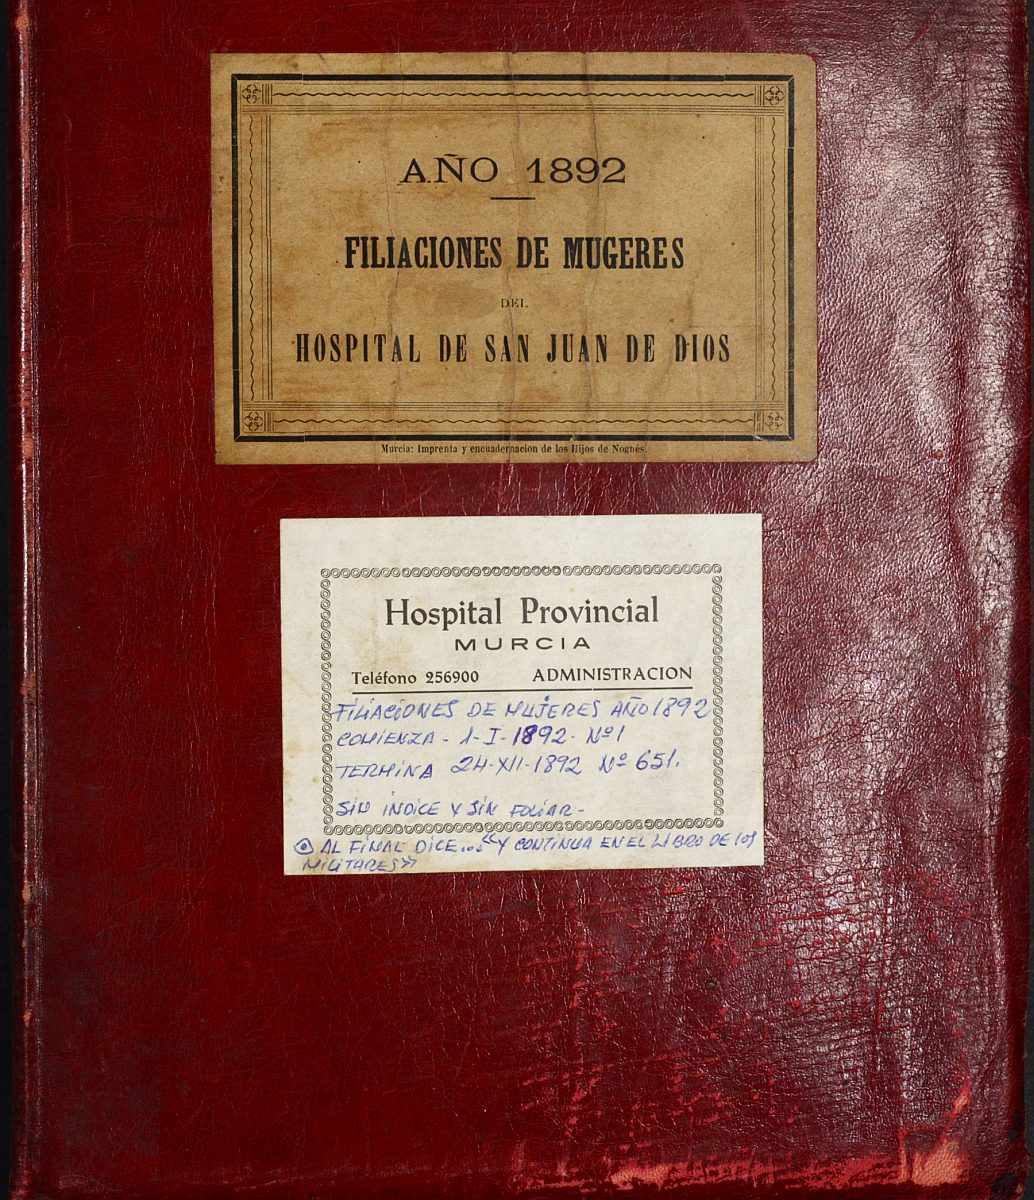 Registro de entrada y salida de enfermos del Hospital. (Mujeres). Año 1892, enero-diciembre.